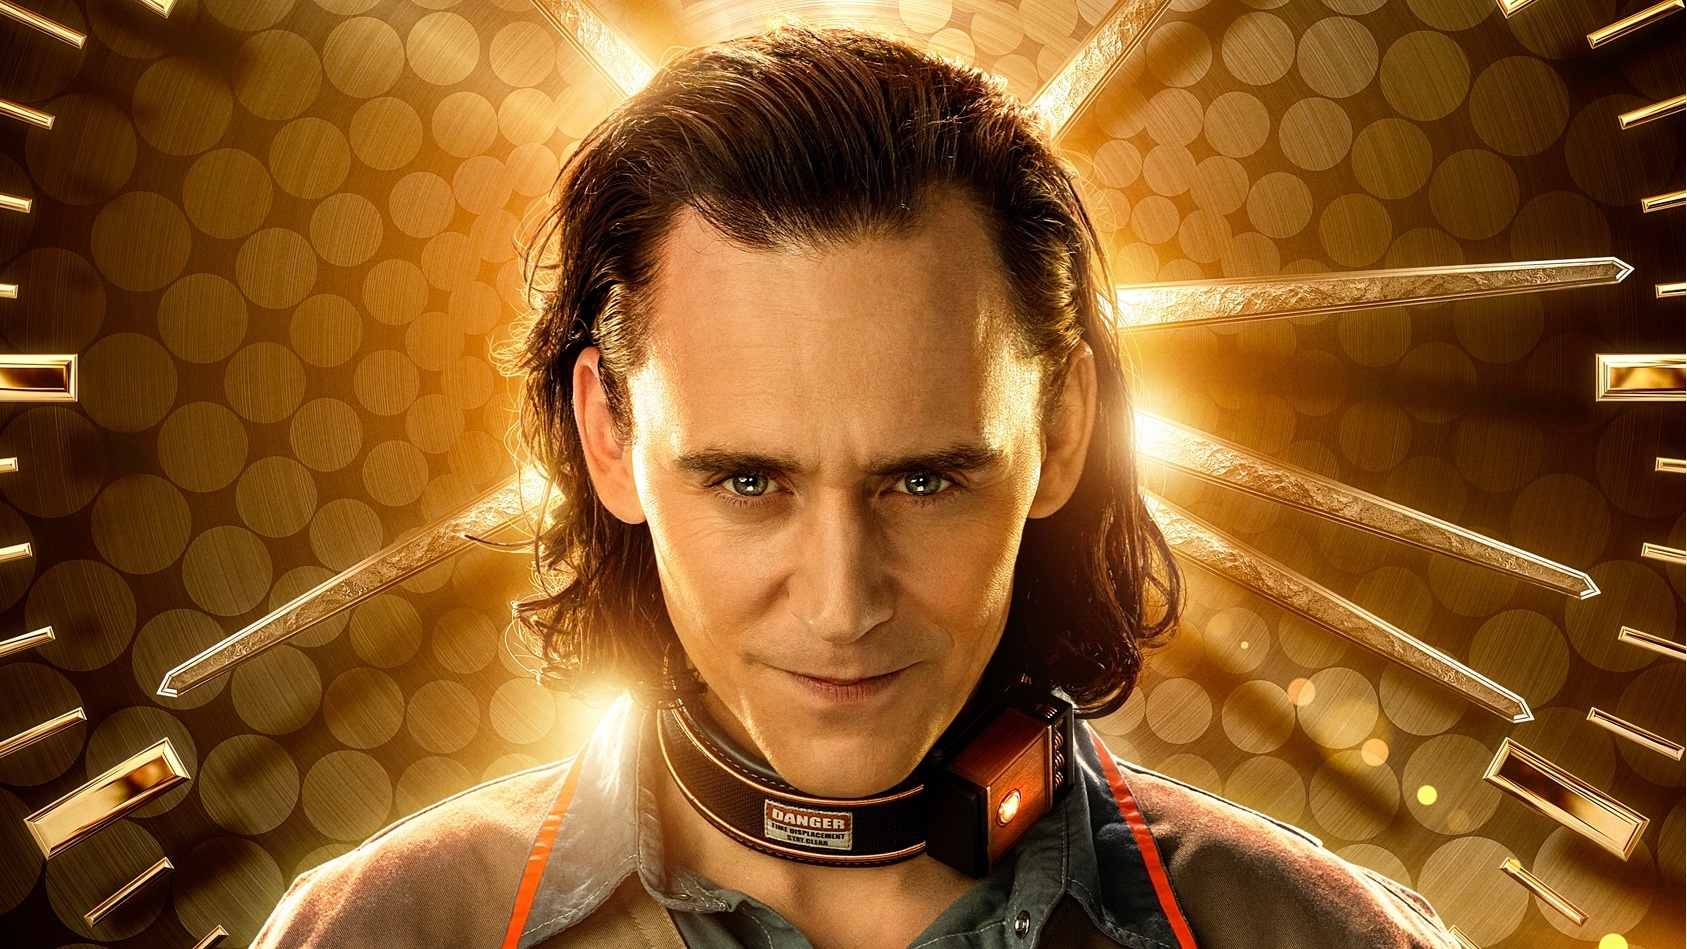 Loki on X: She's back. Episode 2 of #Loki Season 2 is now streaming on  @DisneyPlus.  / X